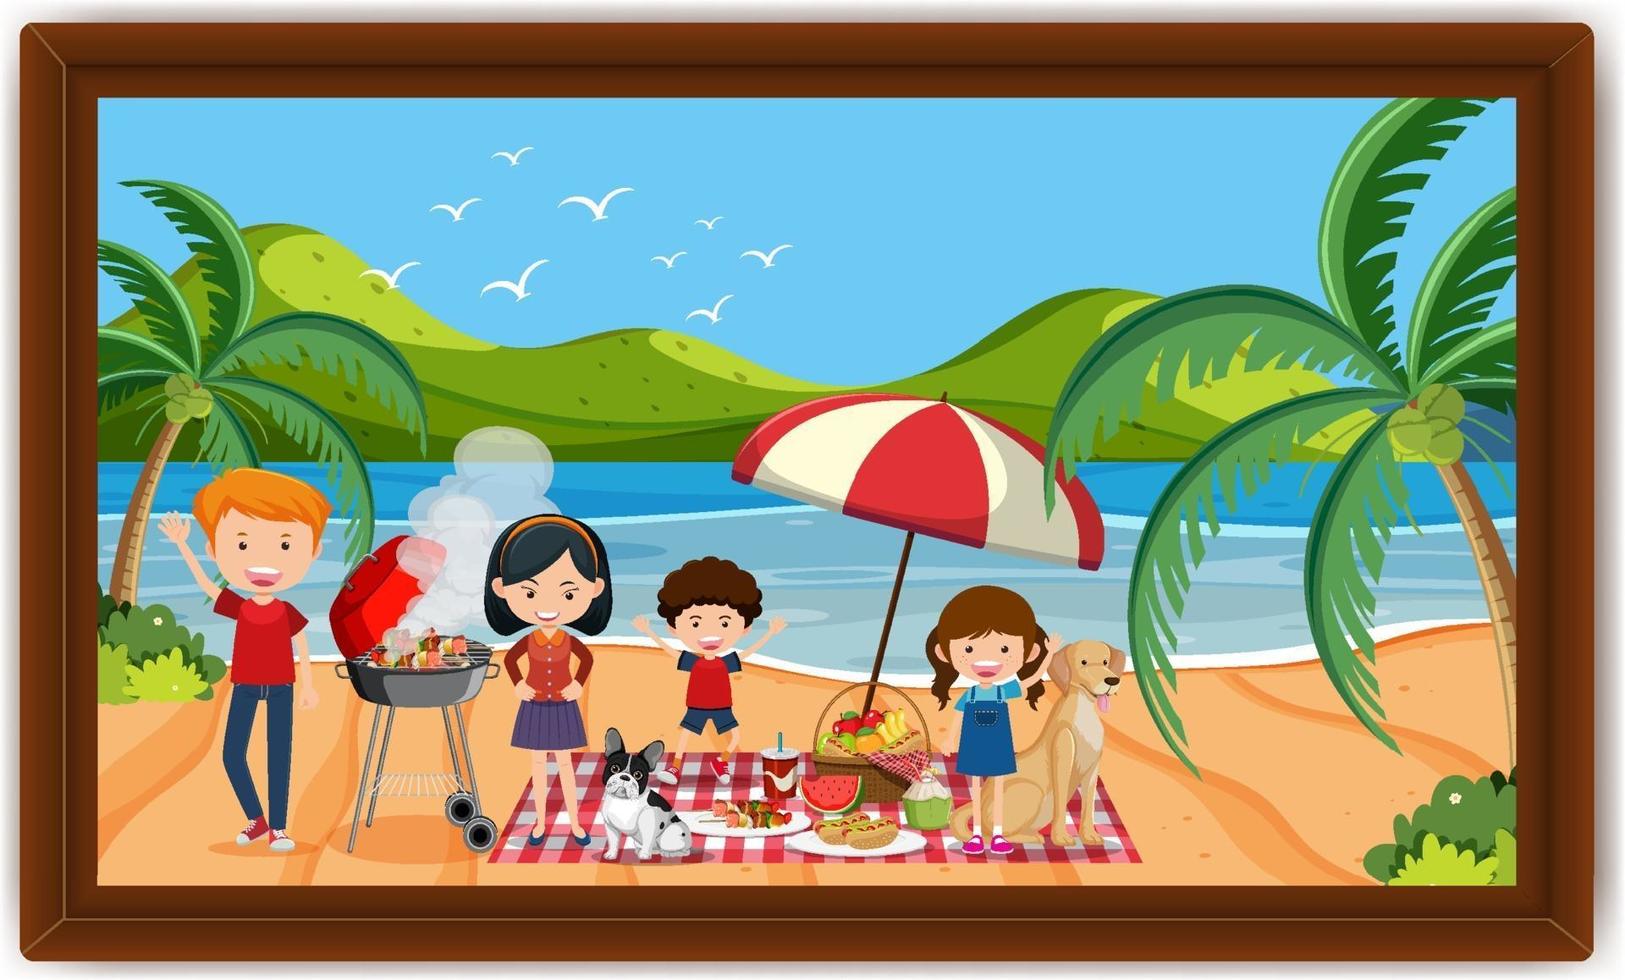 Piquenique em família feliz na foto da cena da praia em um quadro vetor